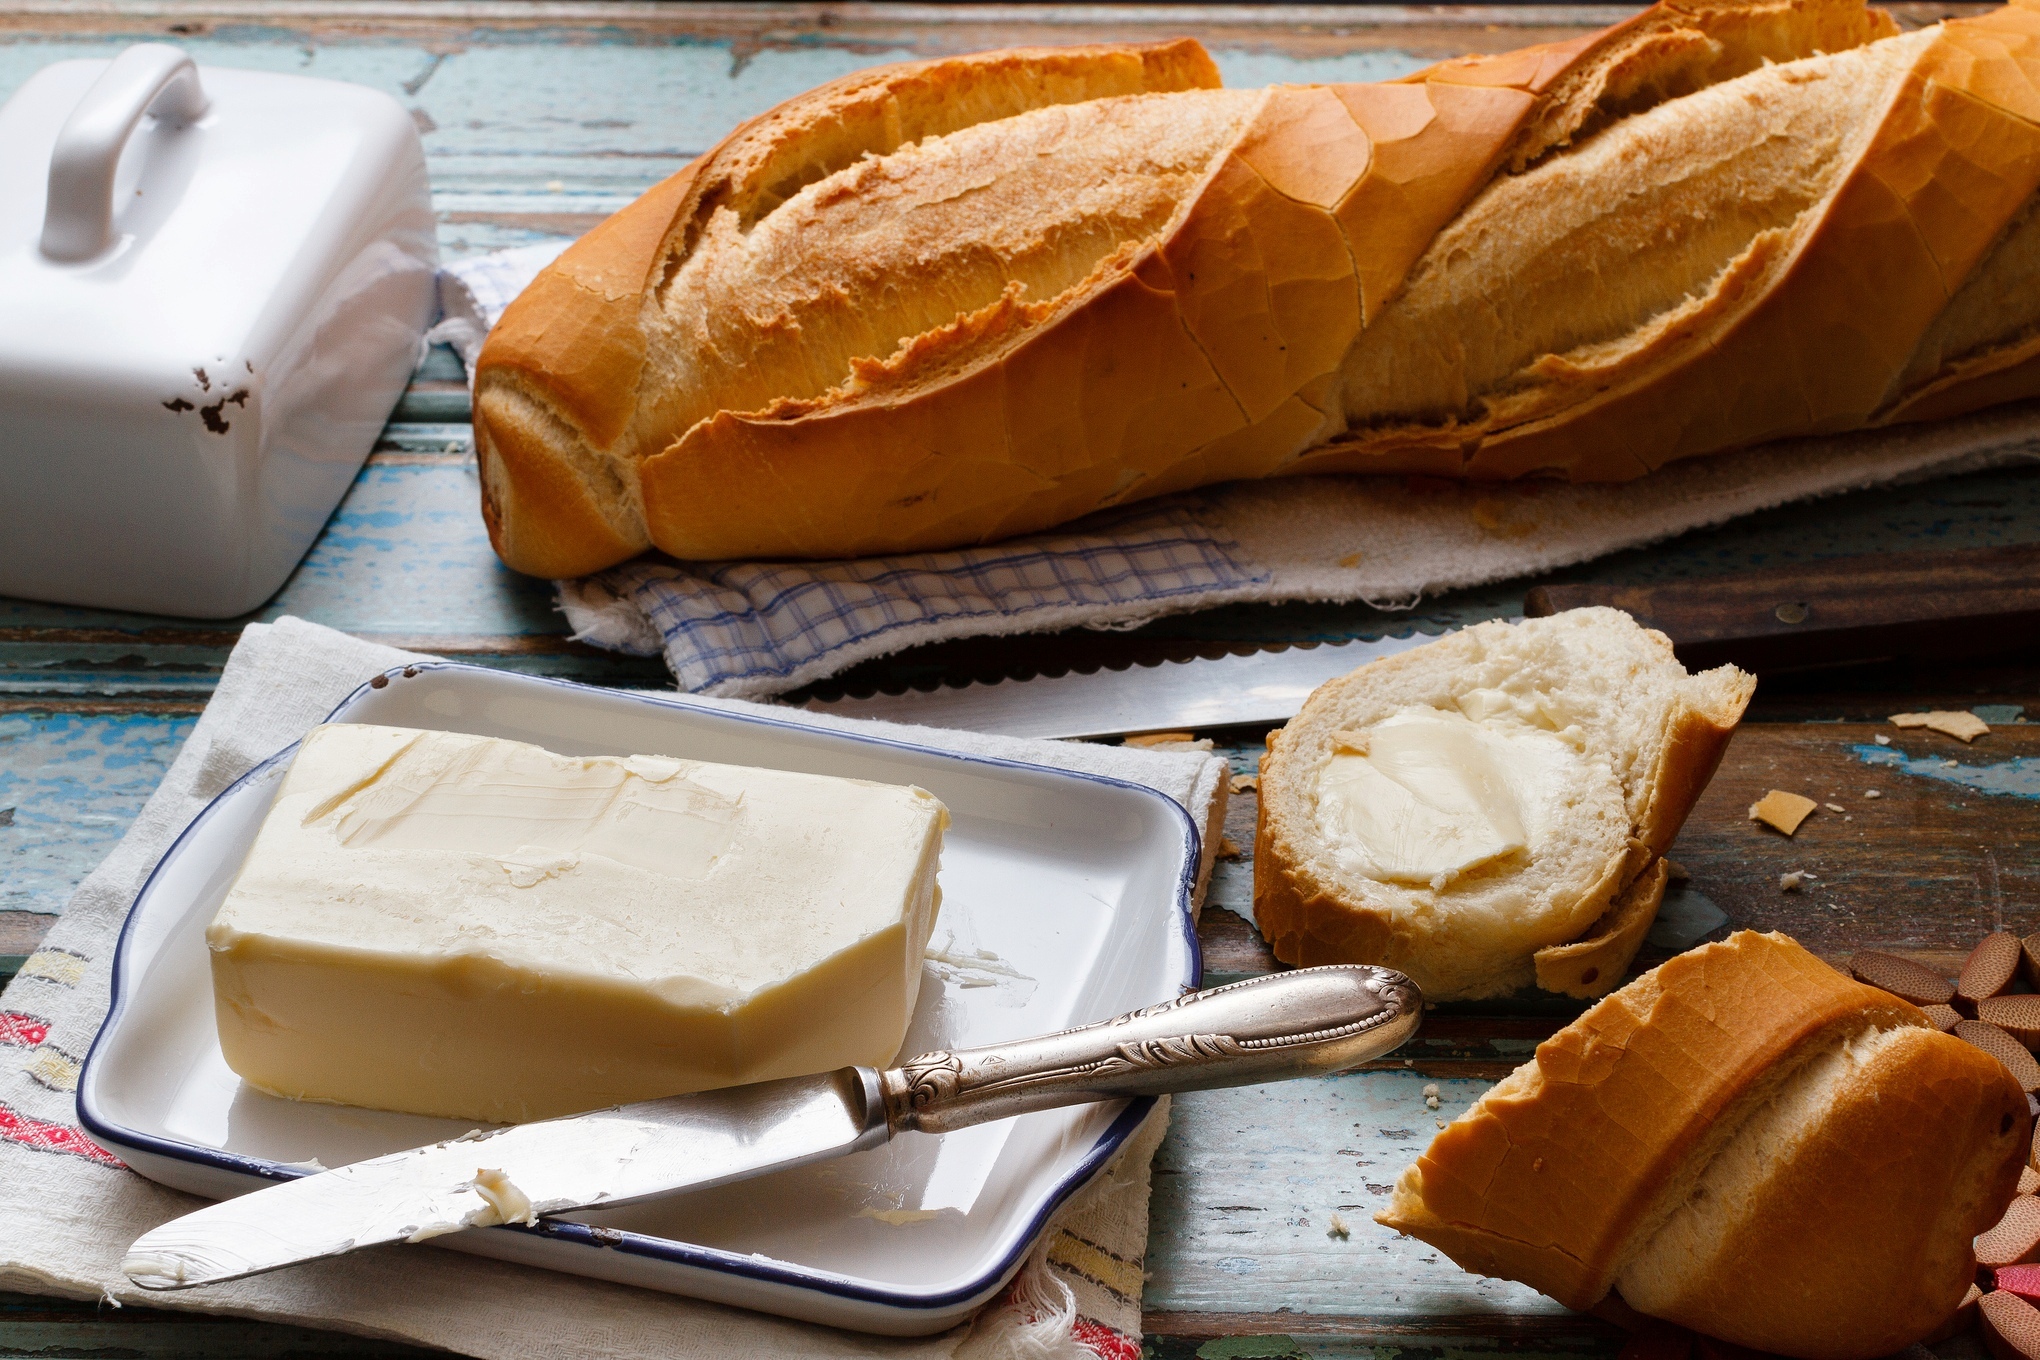 Сливочное масло на завтрак. Бутерброд с маслом. Булка с маслом. Хлеб с маслом. Сливочное масло на хлебе.